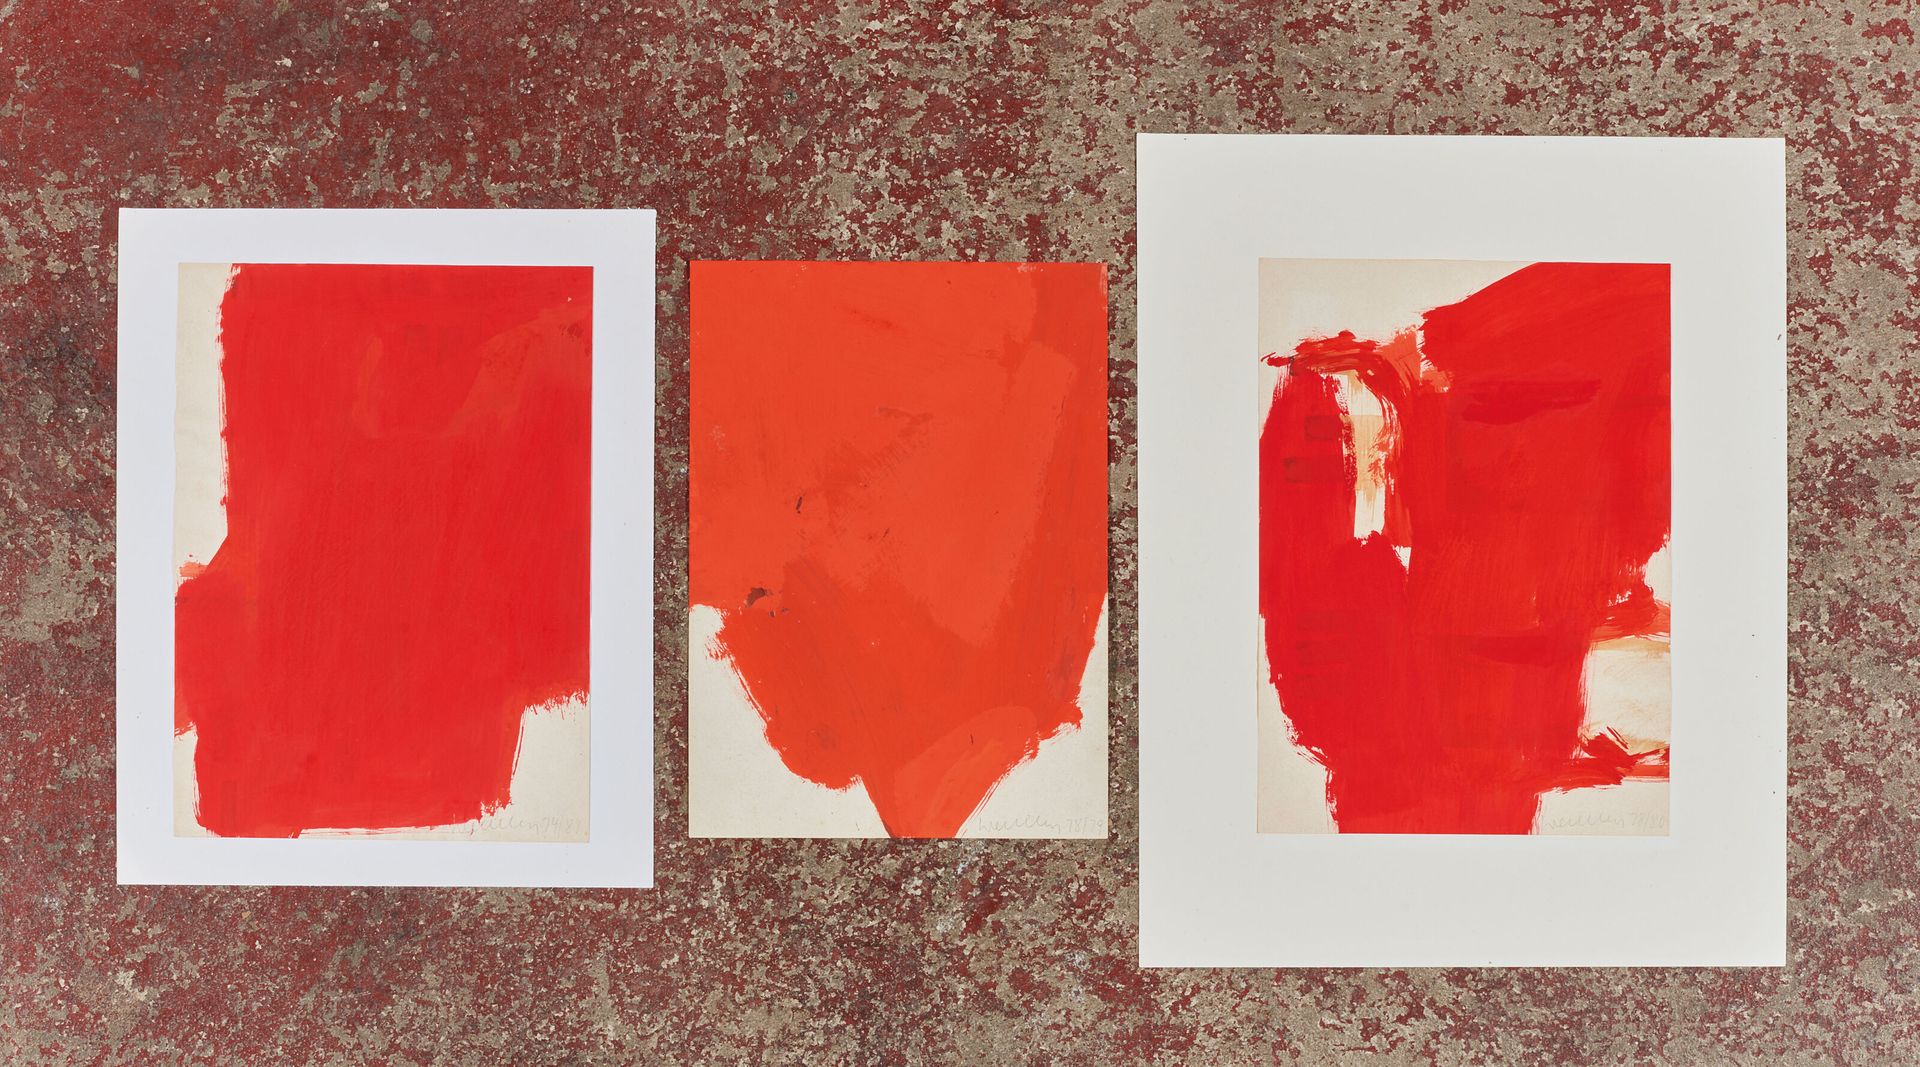 Null 弗朗茨-艾哈德-瓦尔特（生于1939年）。
一套3件作品 - 1974-81。
纸上水粉画。
右下方有签名和日期（78/79, 74/81, 78/8&hellip;